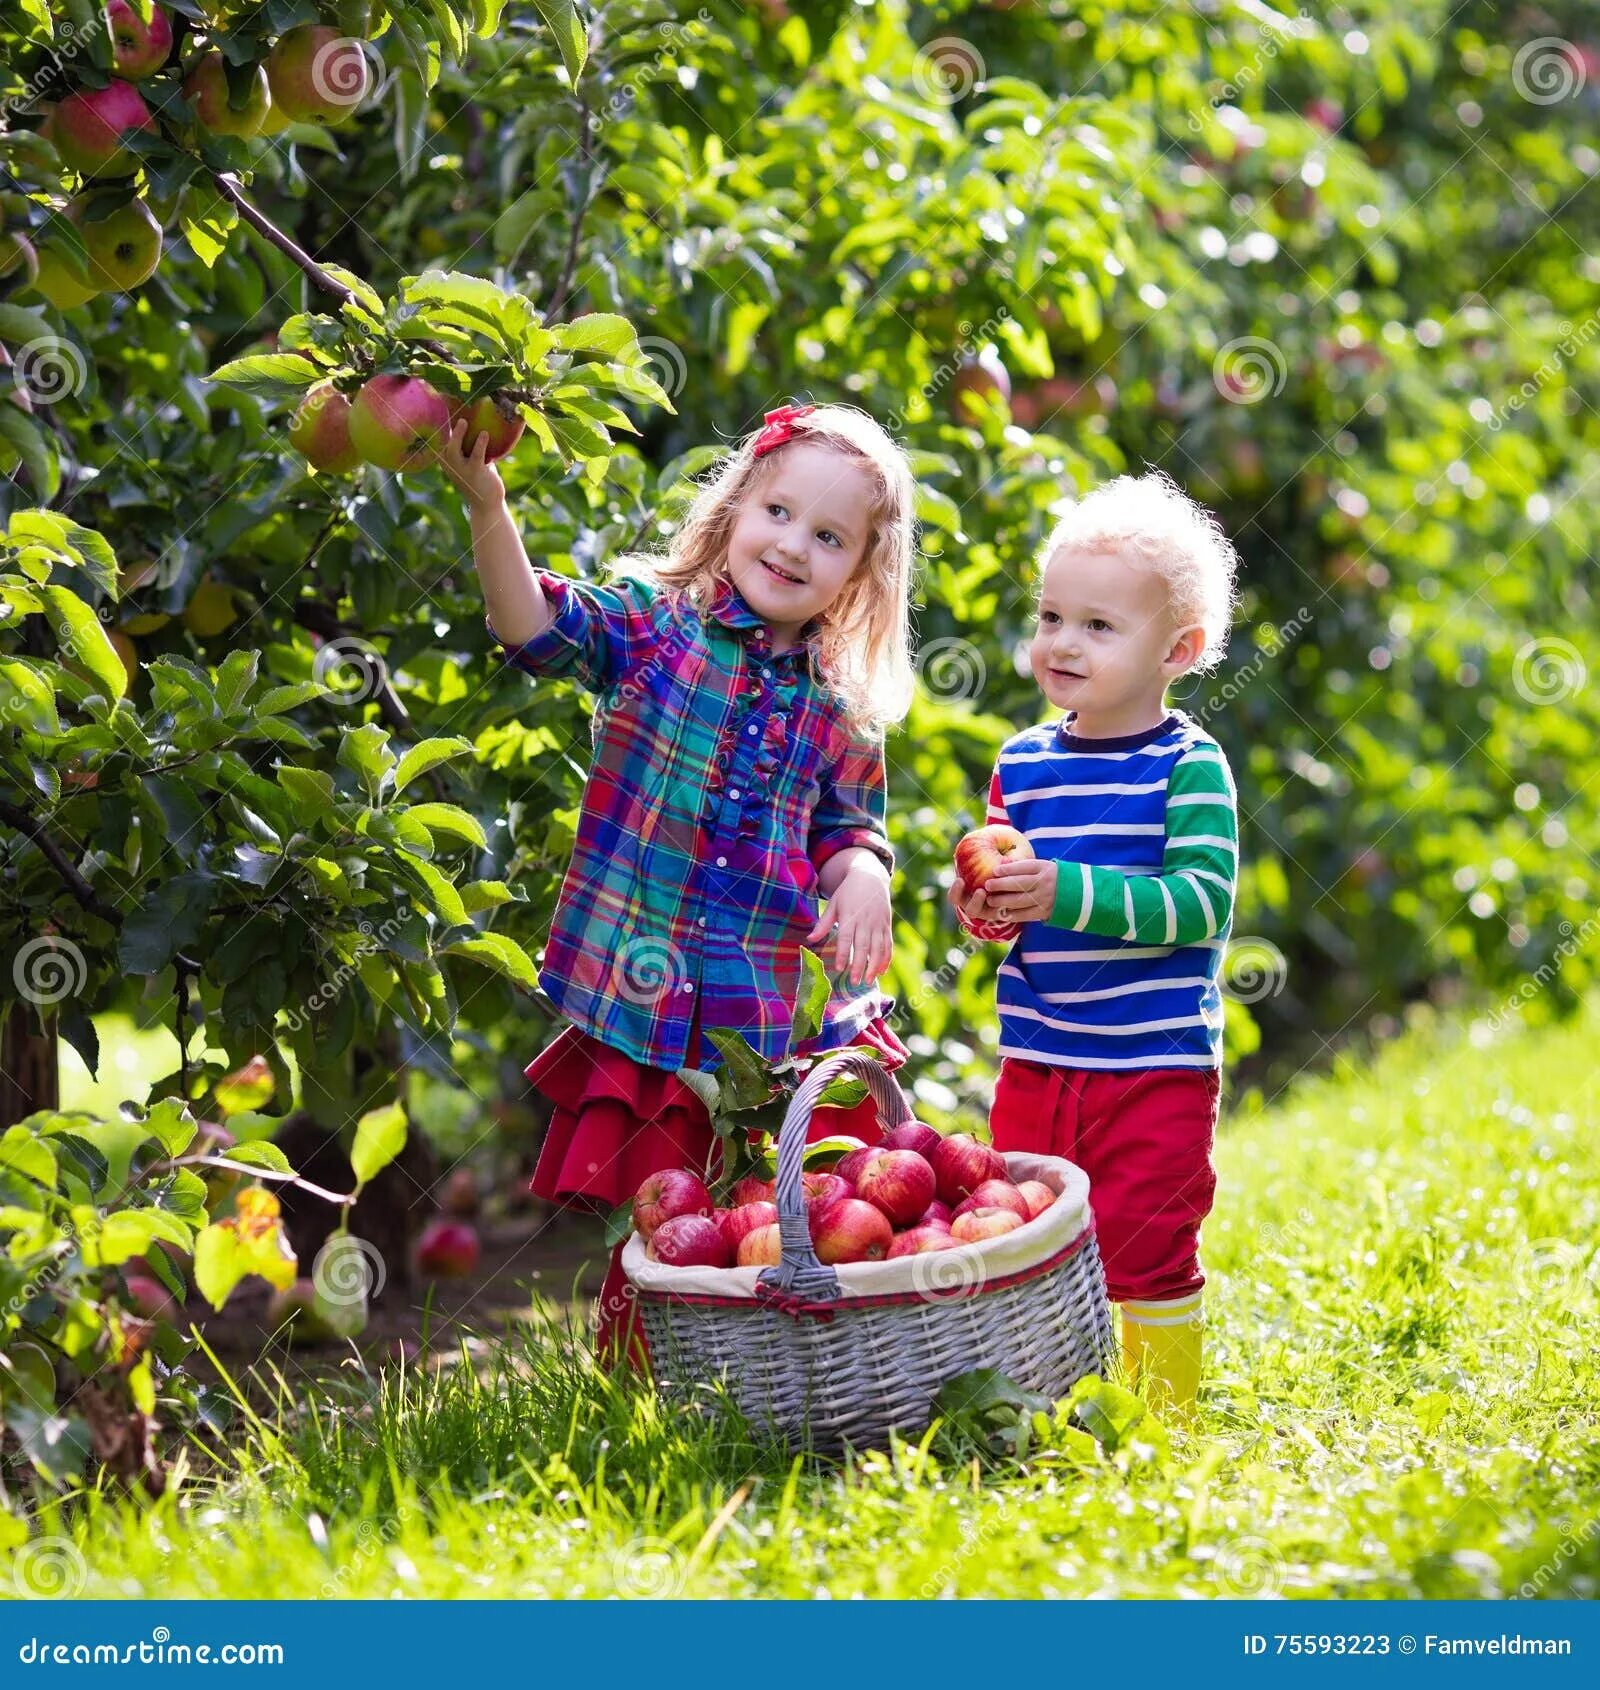 Осенью с яблони собрали яблоки желтые зеленые. Сбор яблок в саду. Фруктовый сад дети. Дети в яблочном саду. Собираем яблоки в саду.